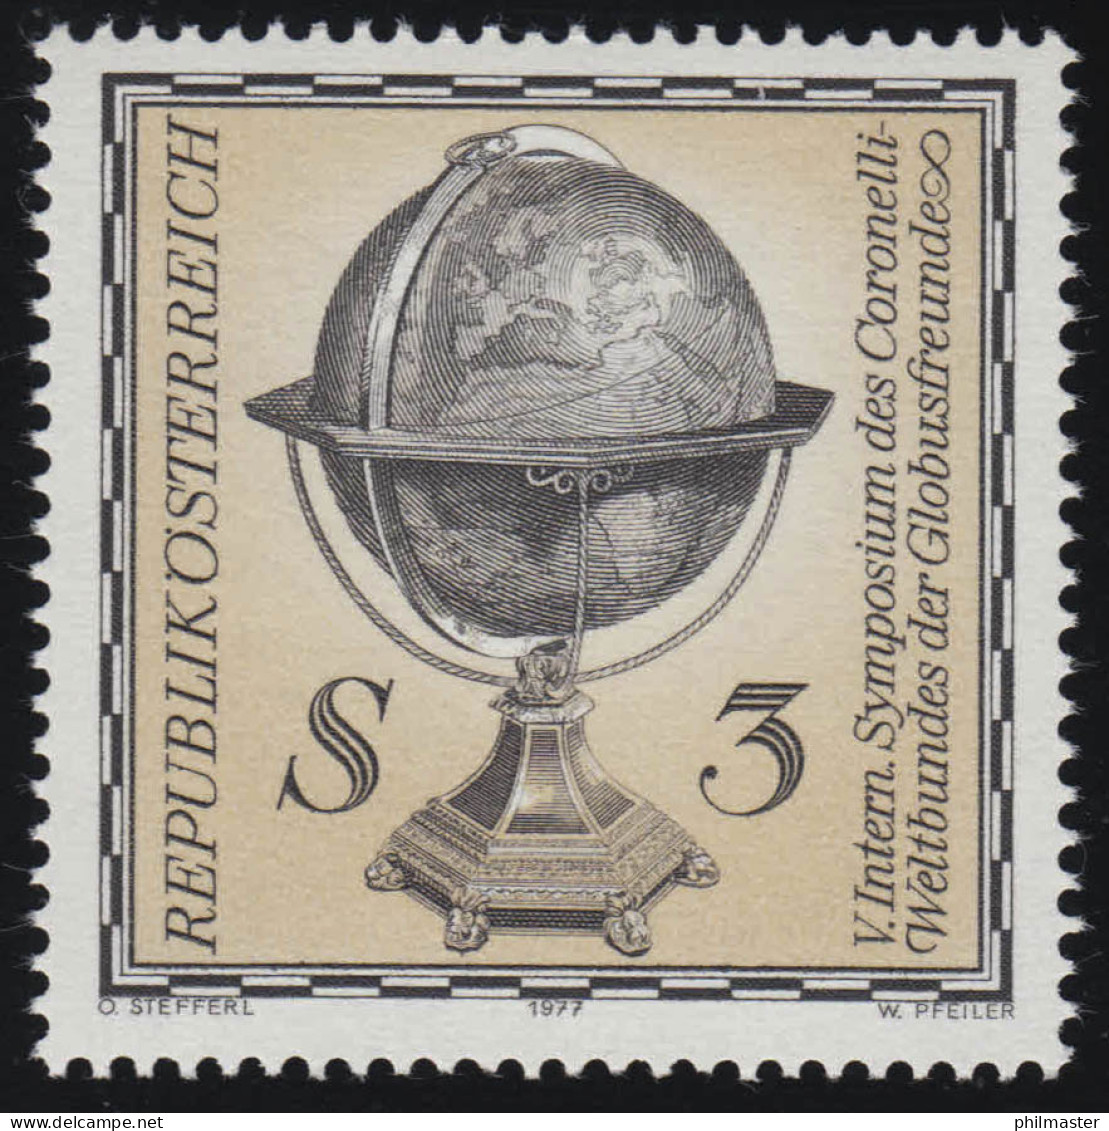 1554 Internationales Symposium Coronelli Weltbund, Erdglobus, 3 S, Postfrisch ** - Unused Stamps